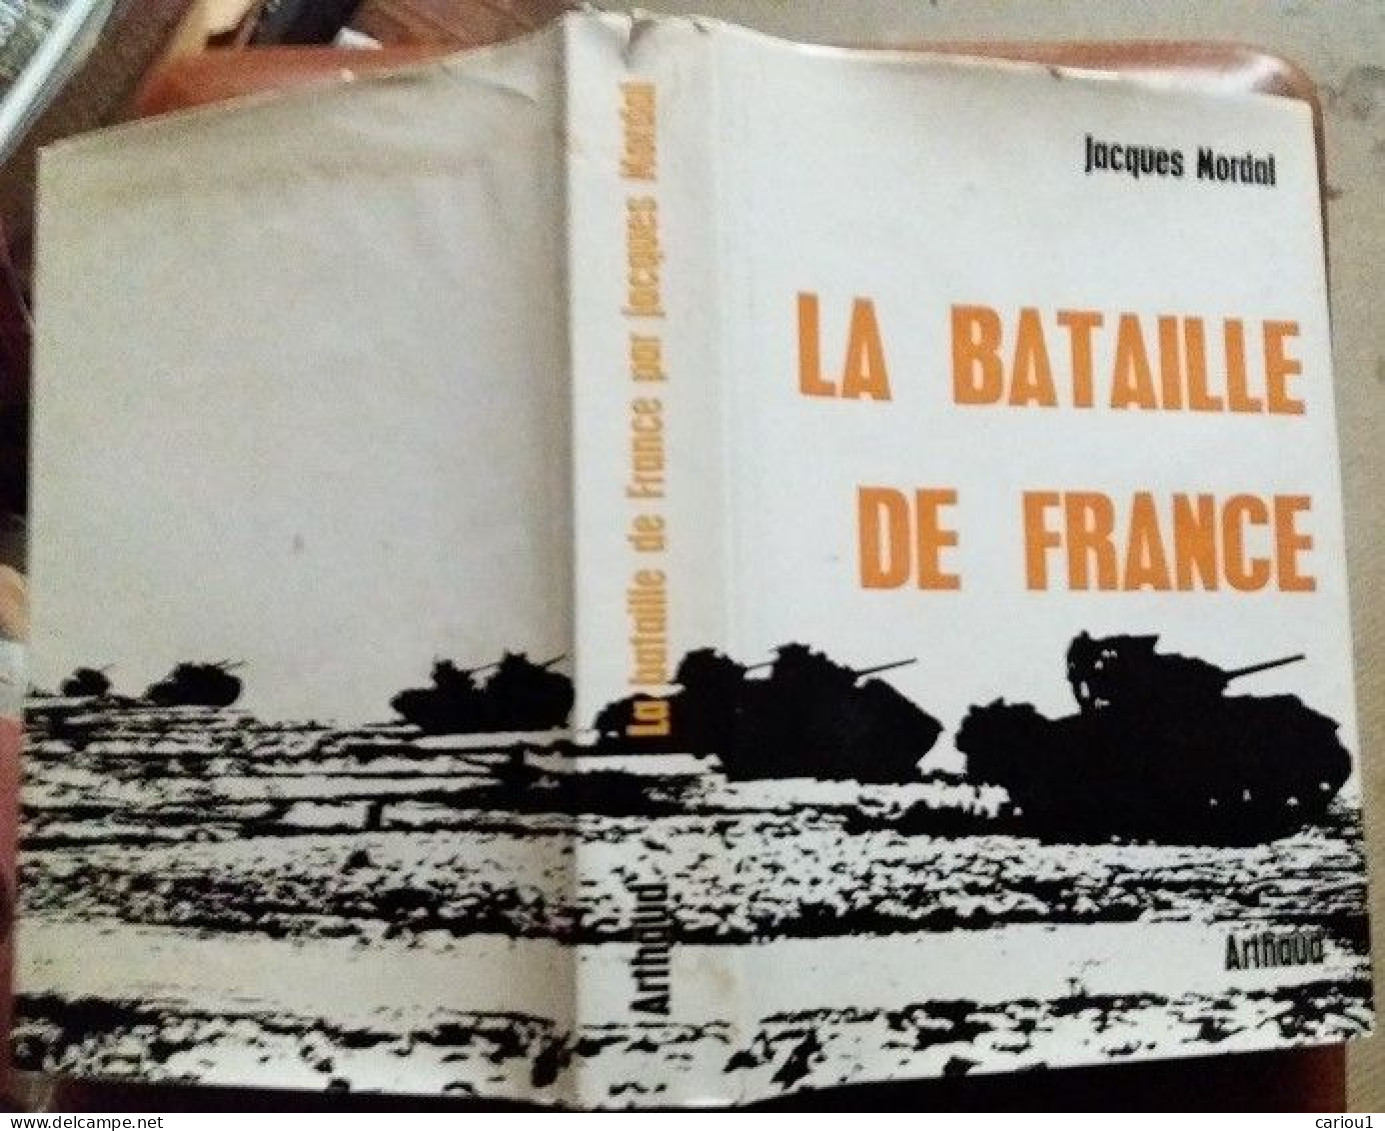 C1 Jacques MORDAL La BATAILLE DE FRANCE 1944 1945 Relie ILLUSTRE Epuise CARTES Port Inclus France - French